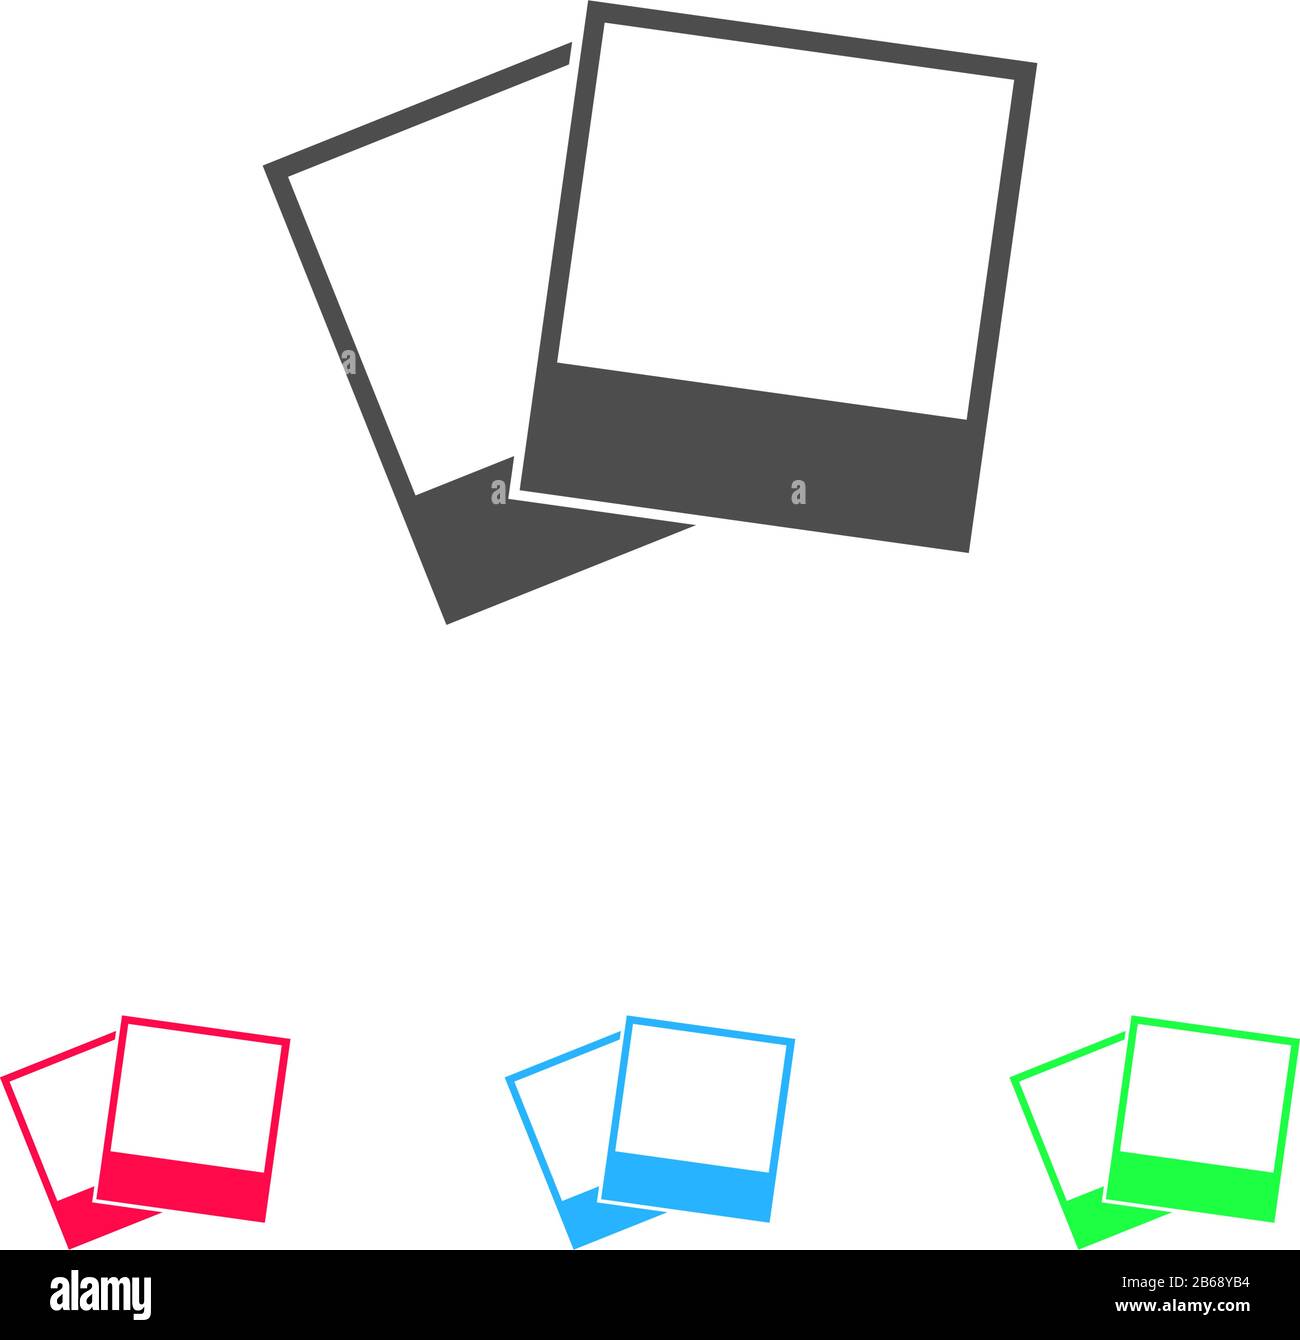 Fotosymbol flach. Farbpiktogramm auf weißem Hintergrund. Symbol für Vektorgrafiken und Bonussymbole Stock Vektor